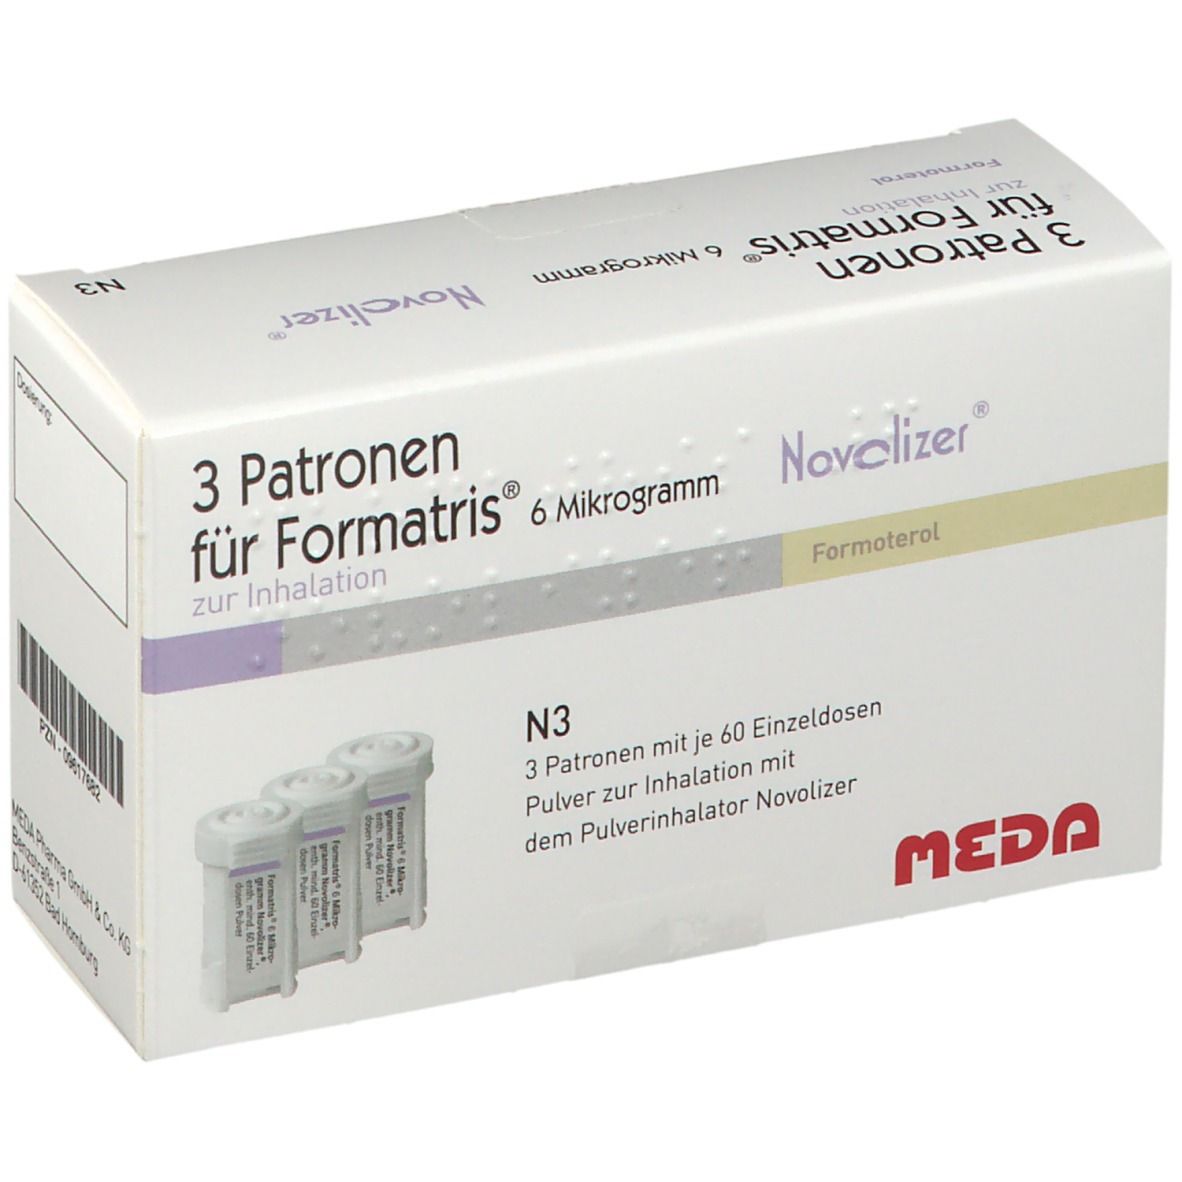 Formatris® 6 µg Novolizer®